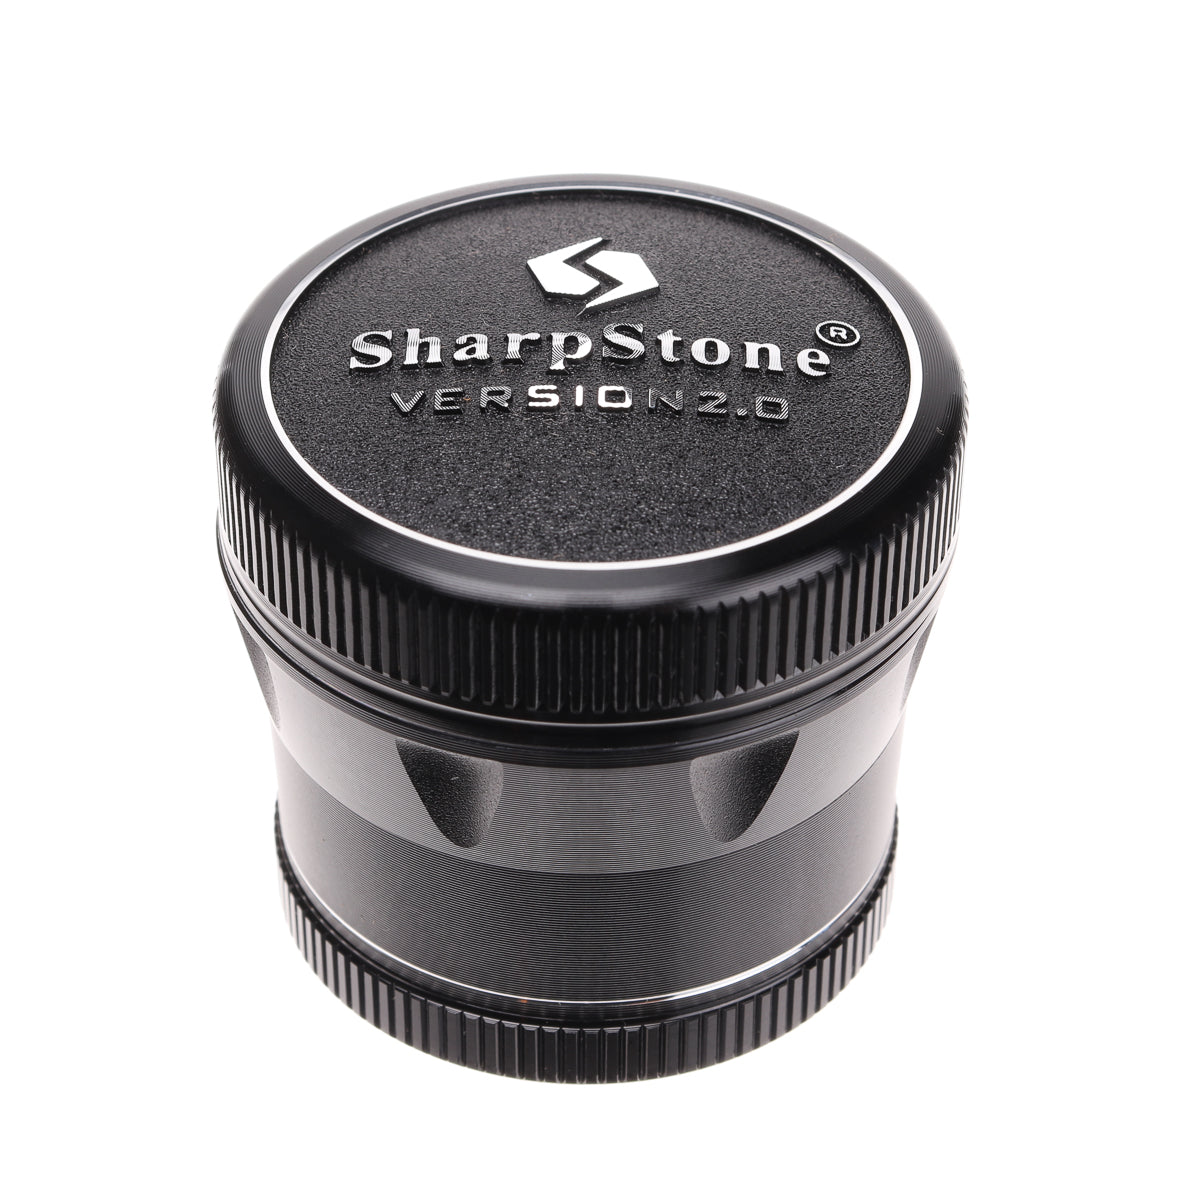 SharpStone V2 4 Piece 1.5″ Grinder